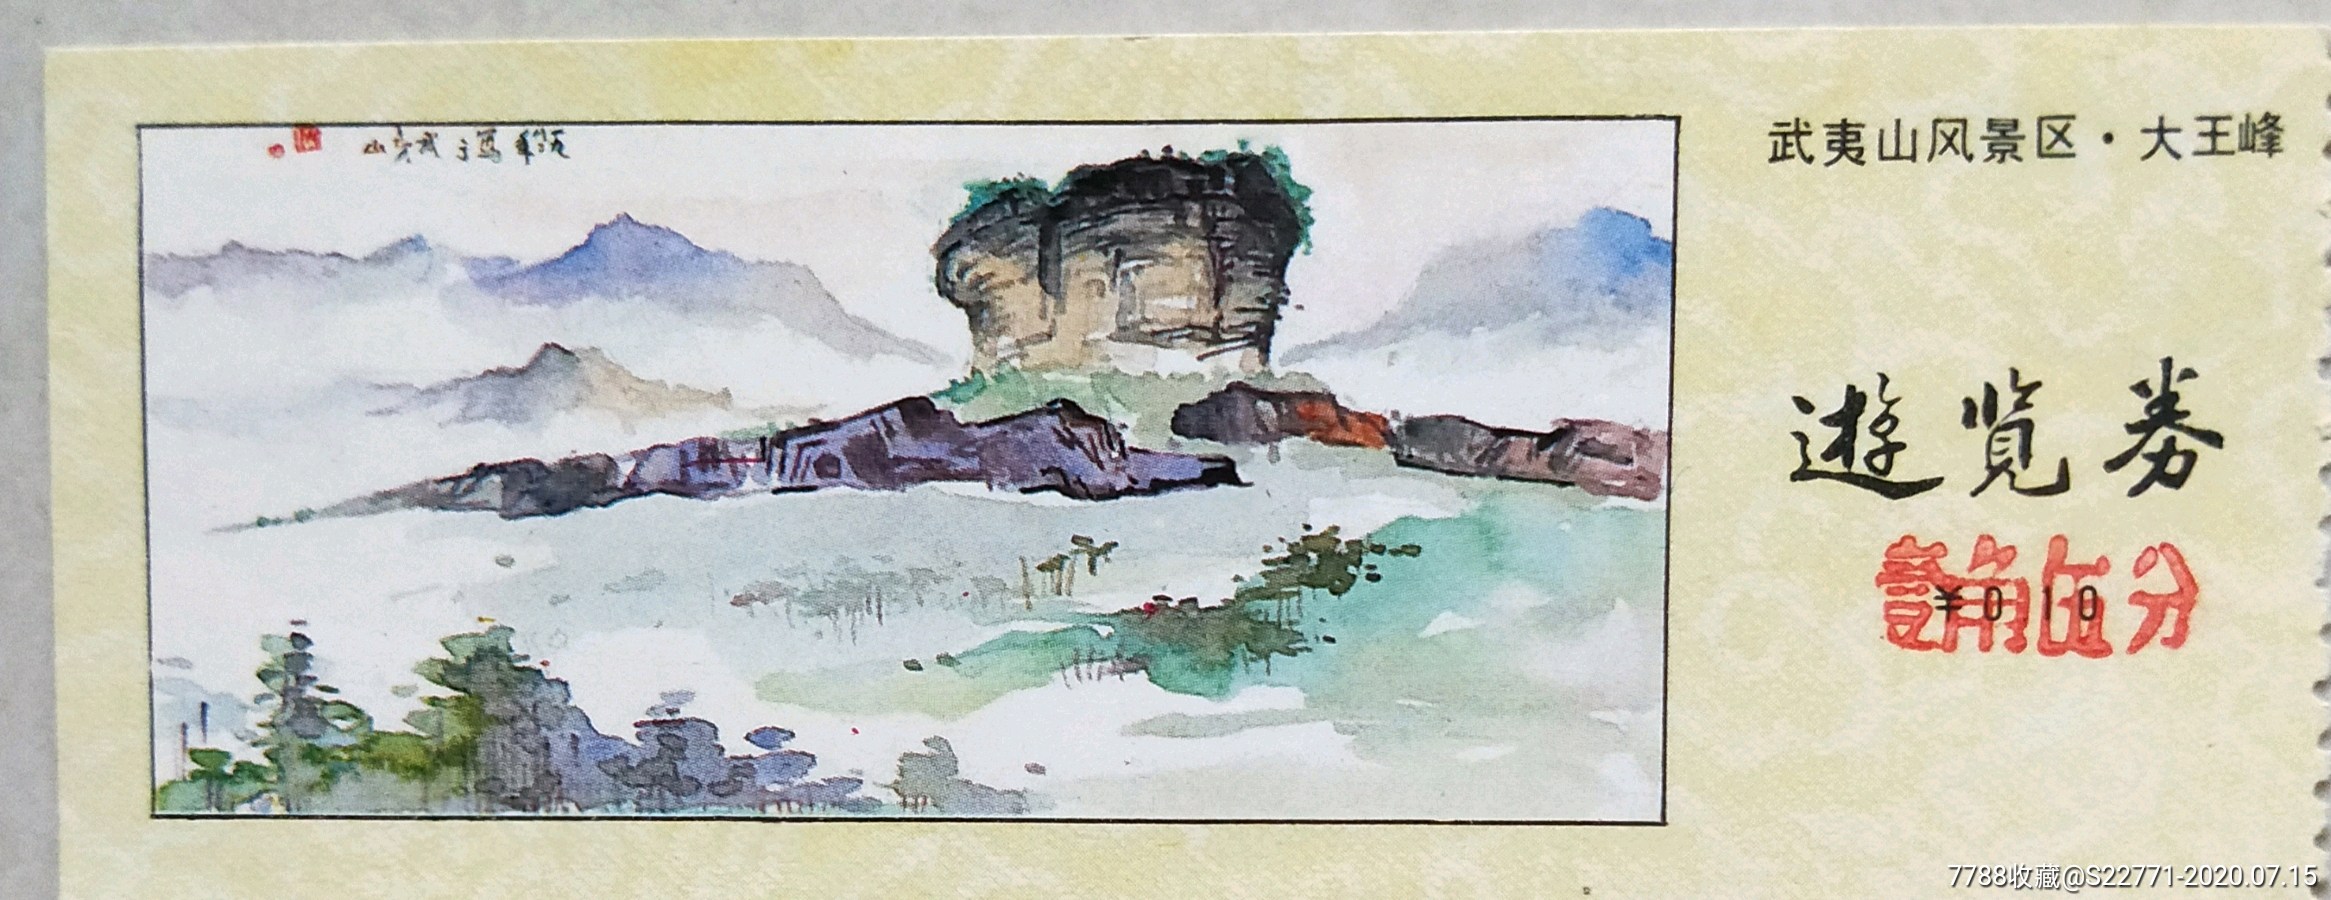 大王峰国画图片